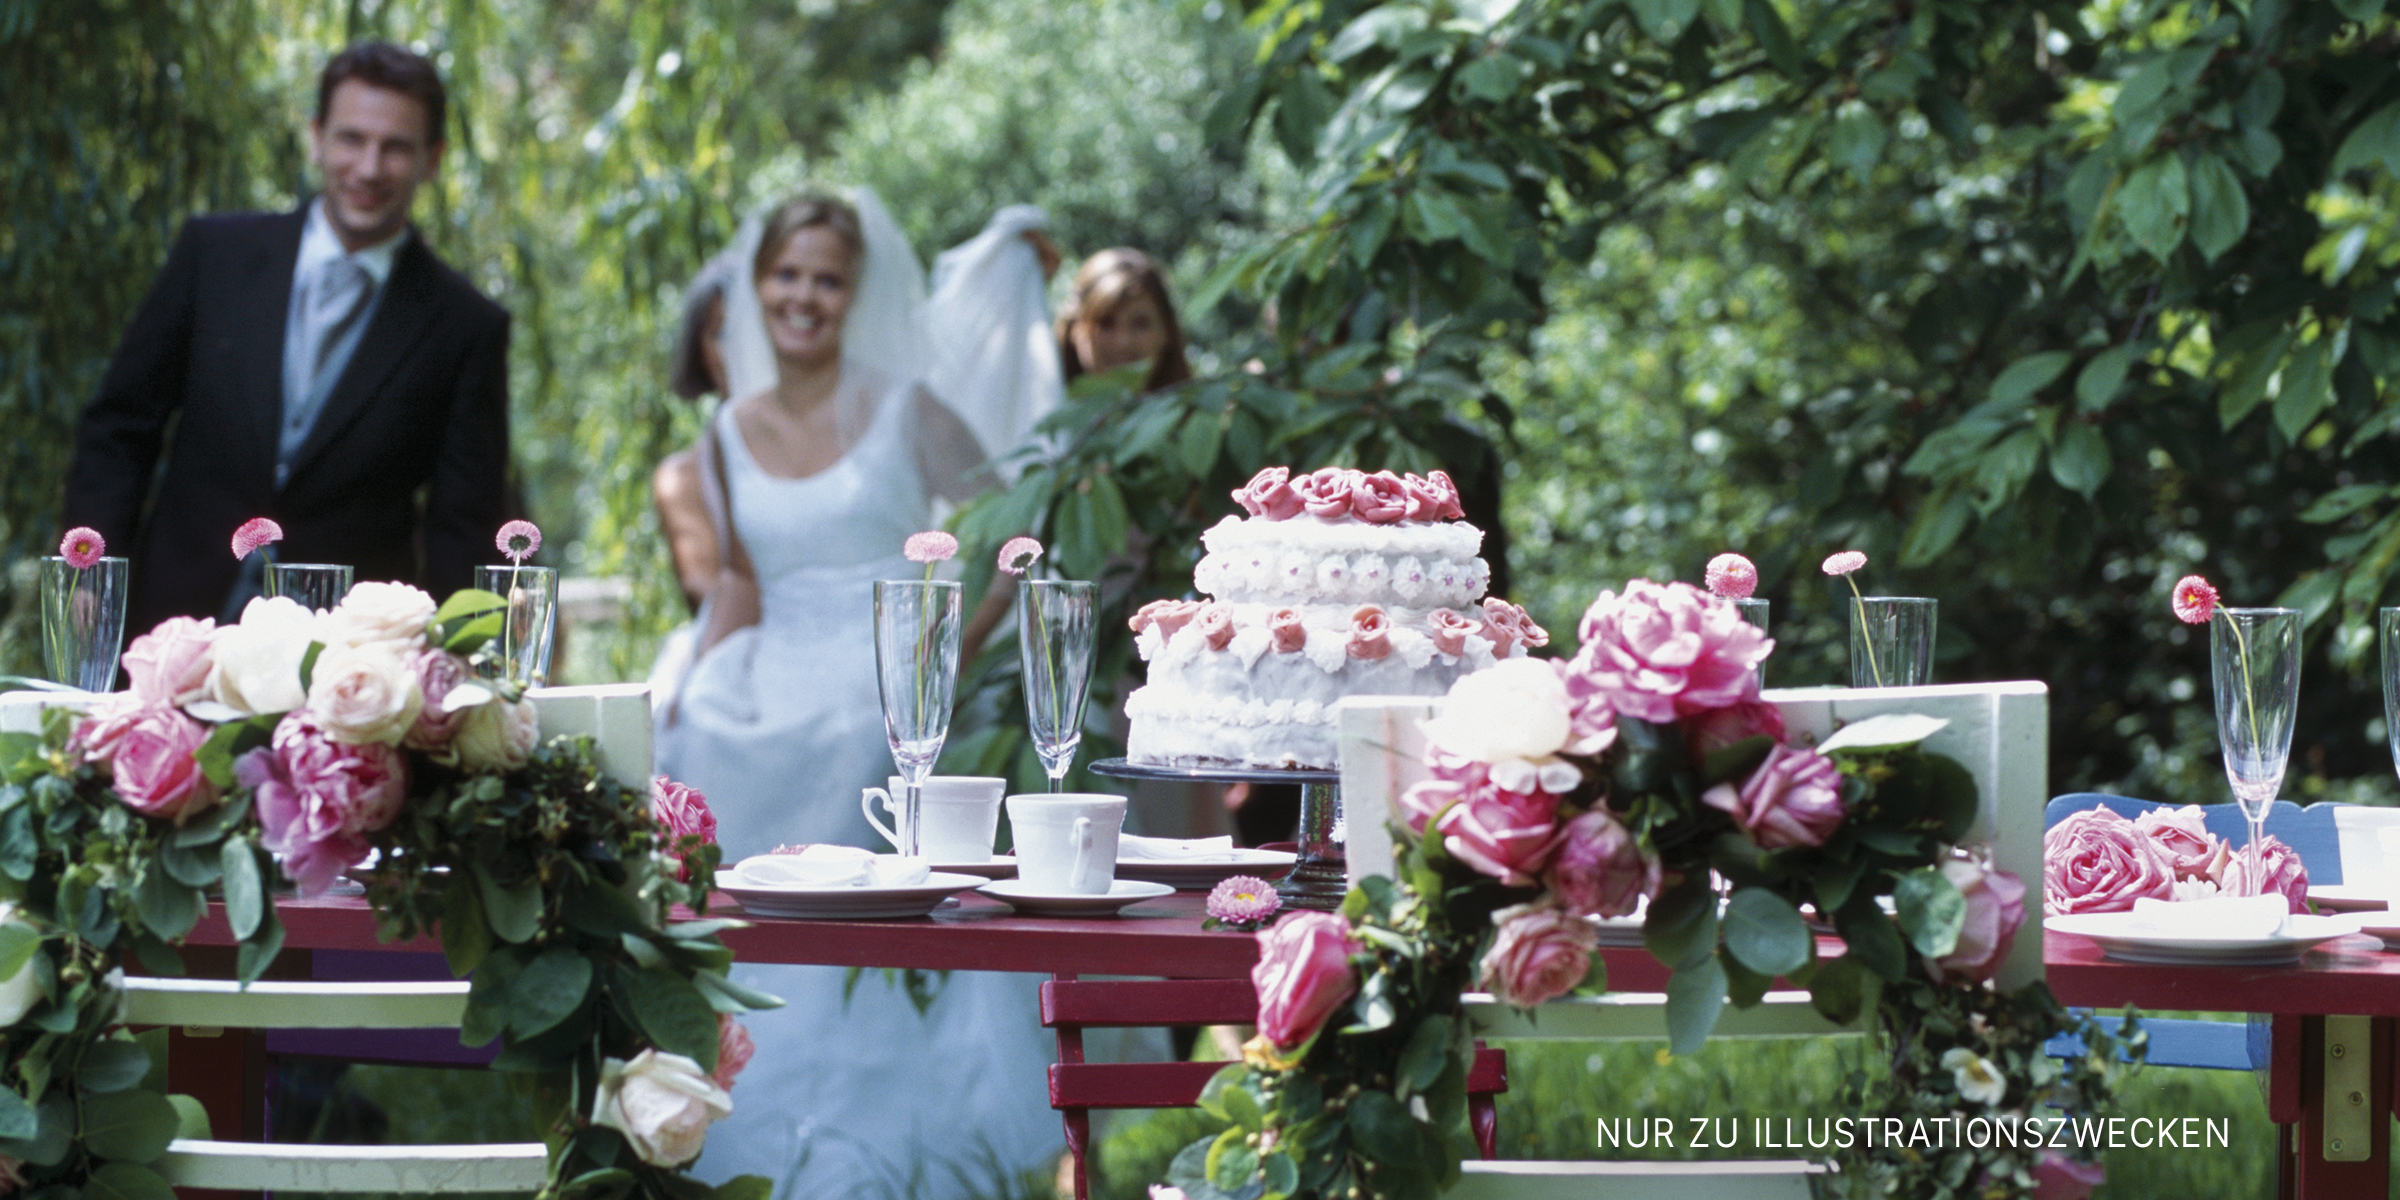 Braut und Bräutigam während des Schneiden der Torte | Quelle: Getty Images